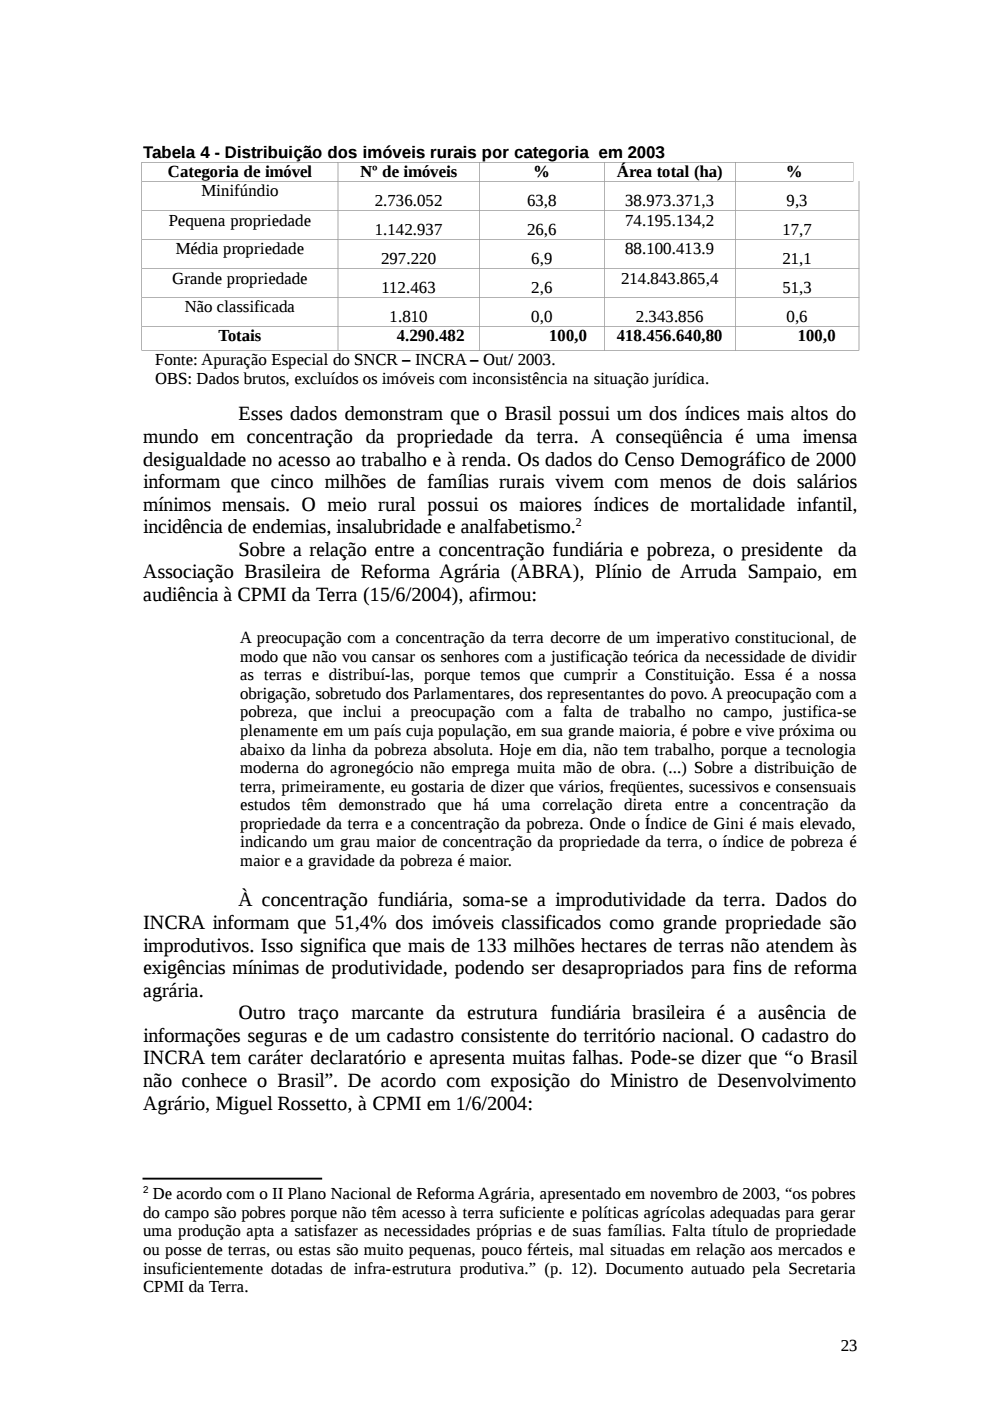 Page 23 from Relatório final da comissão